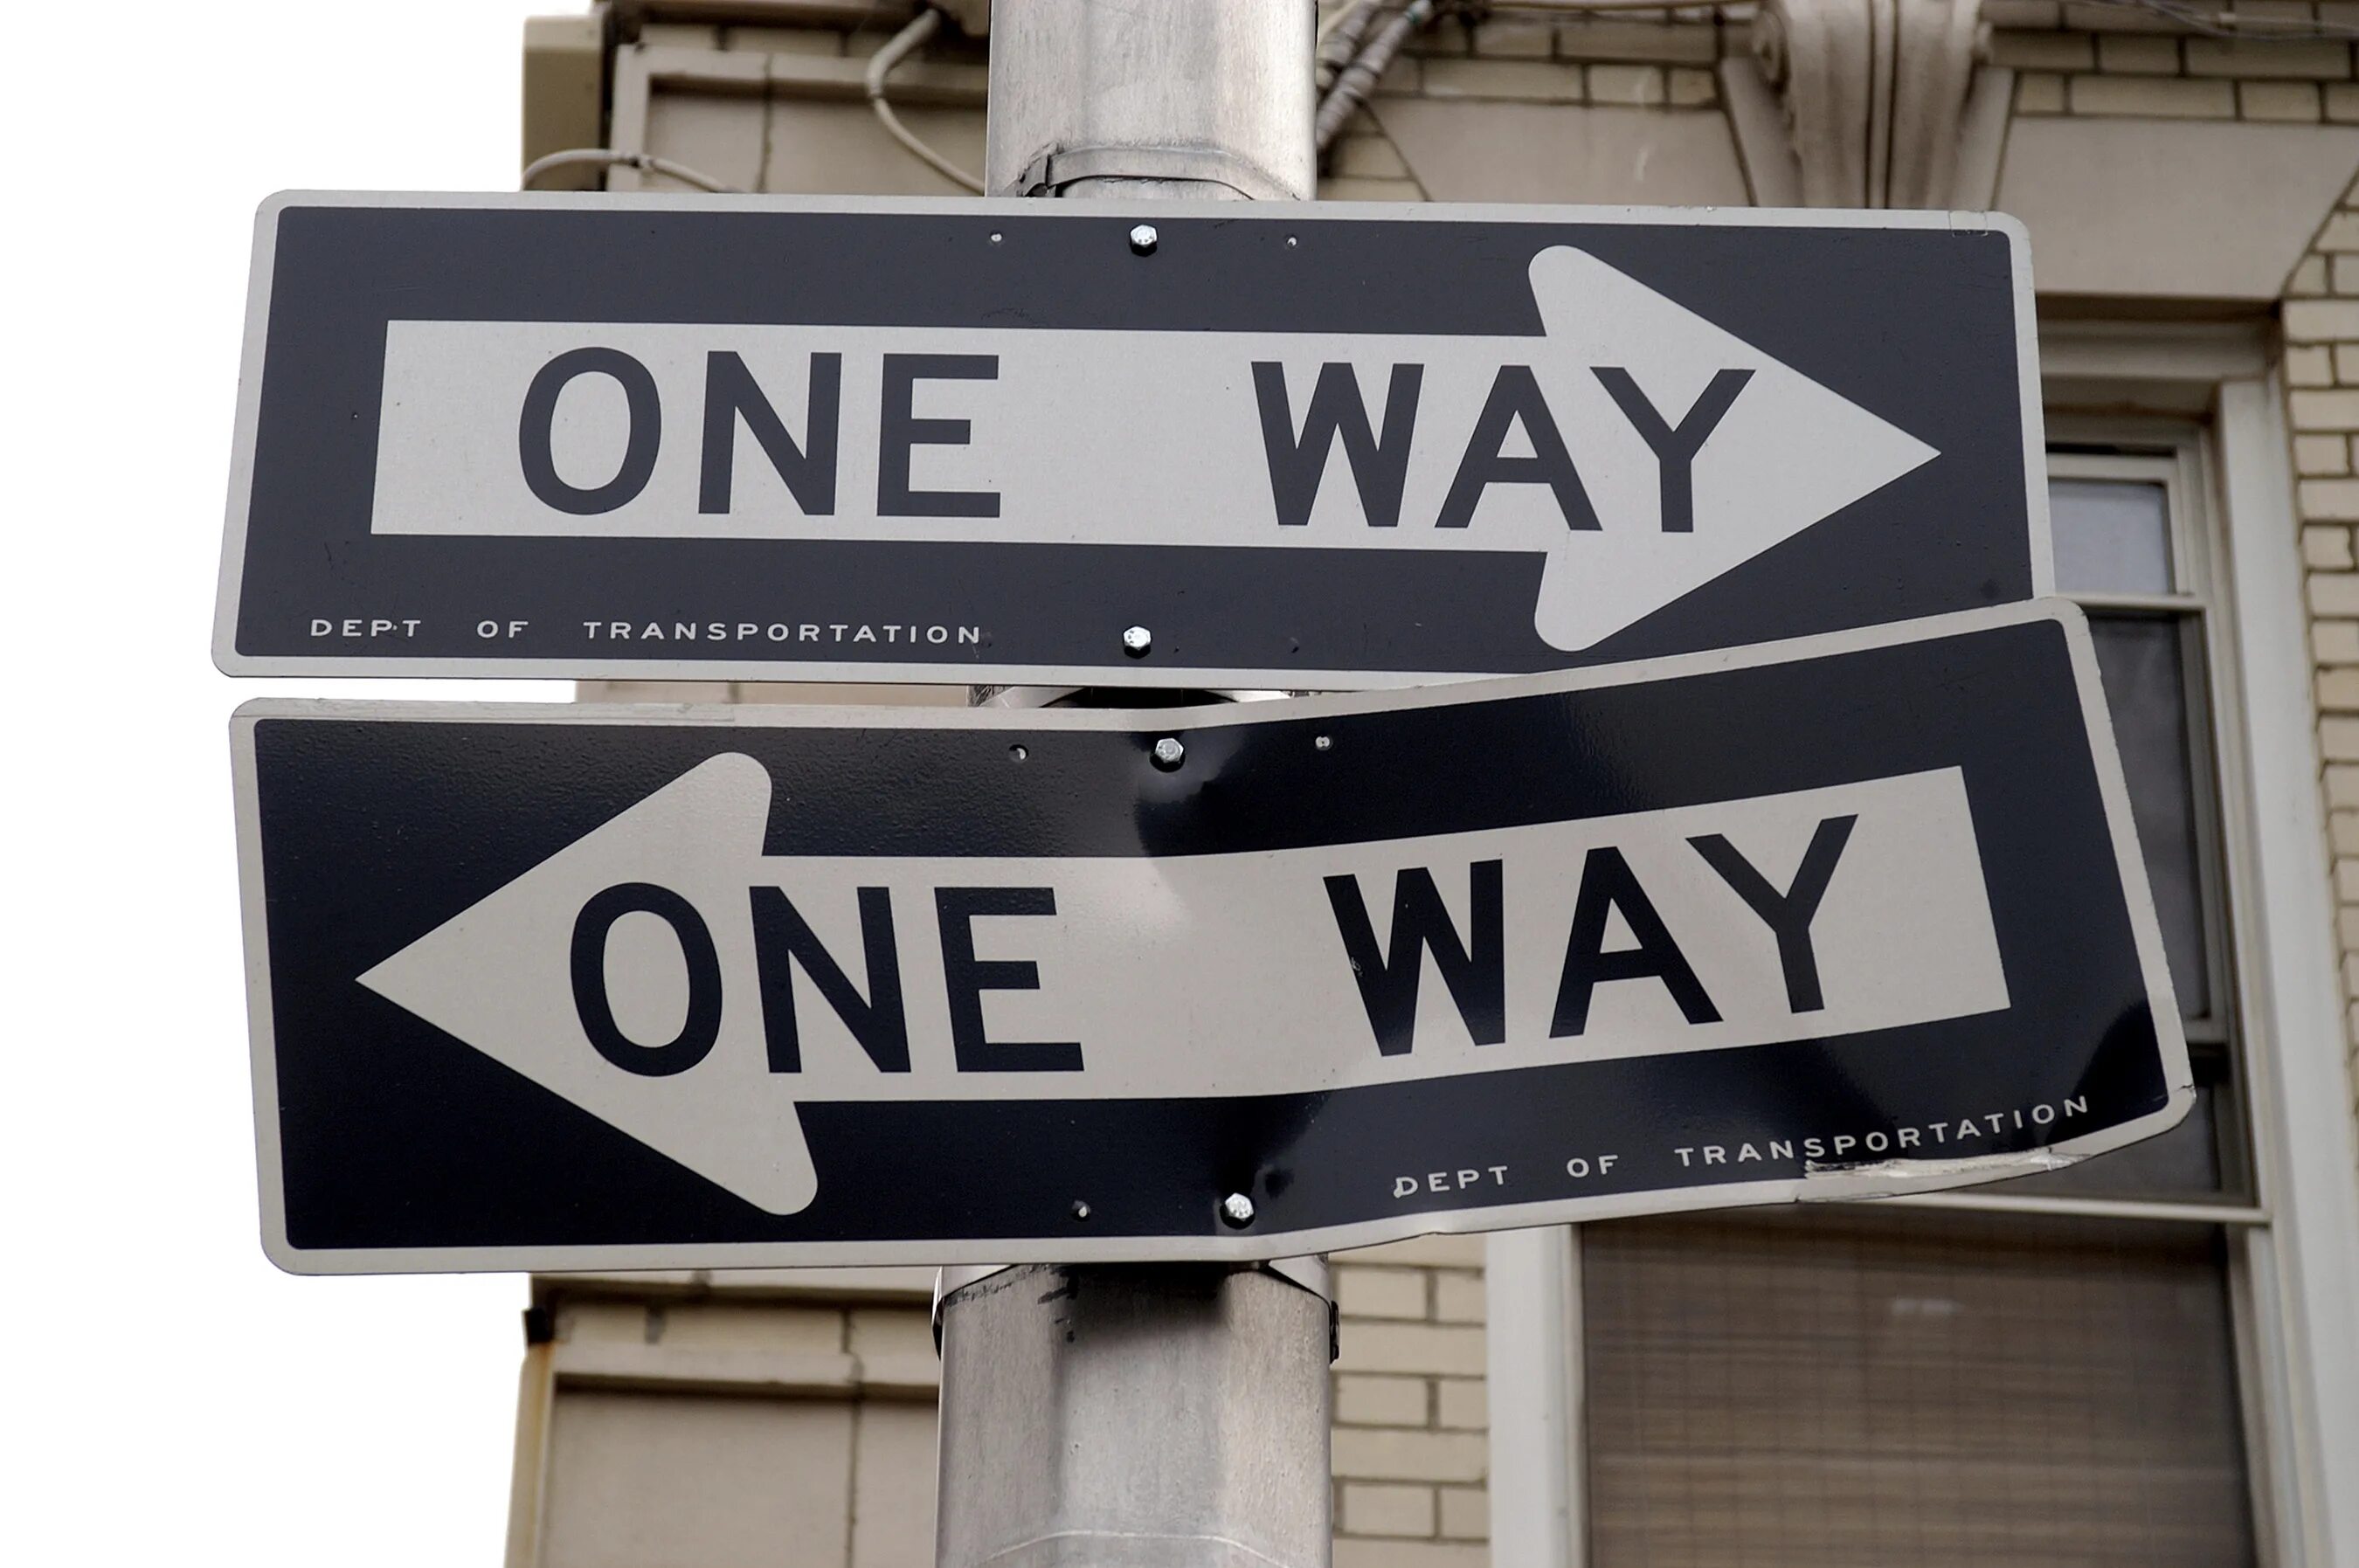 Way sign. One way. One way указатель. One way знак дорожный. Надпись one way.